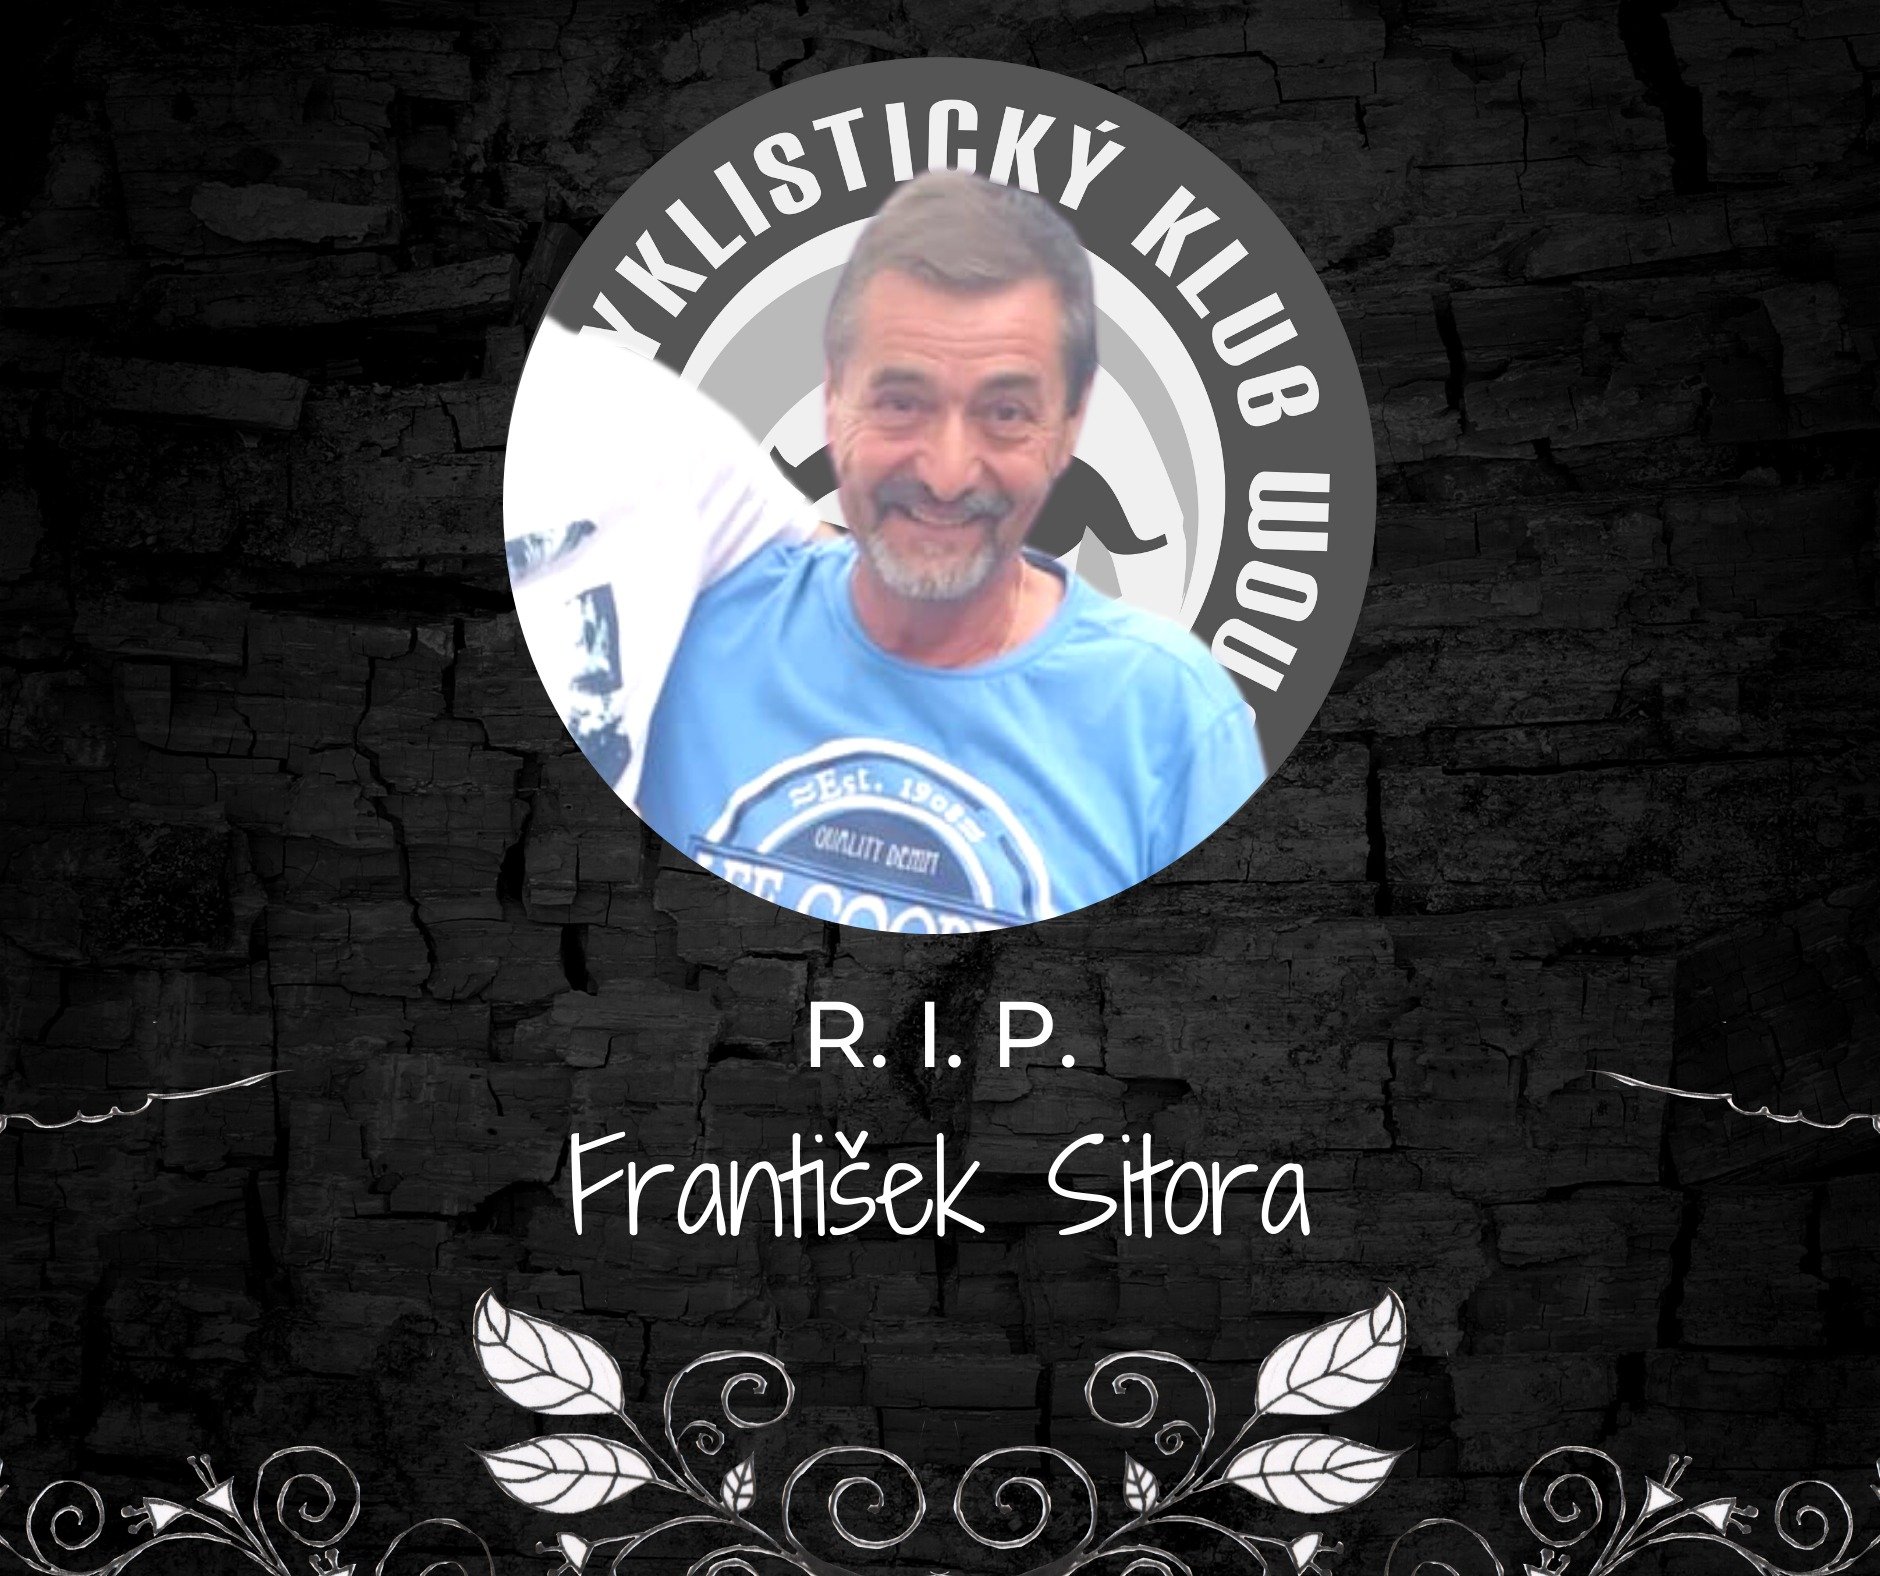 Zomrel významný cyklistický tréner František Sitor.